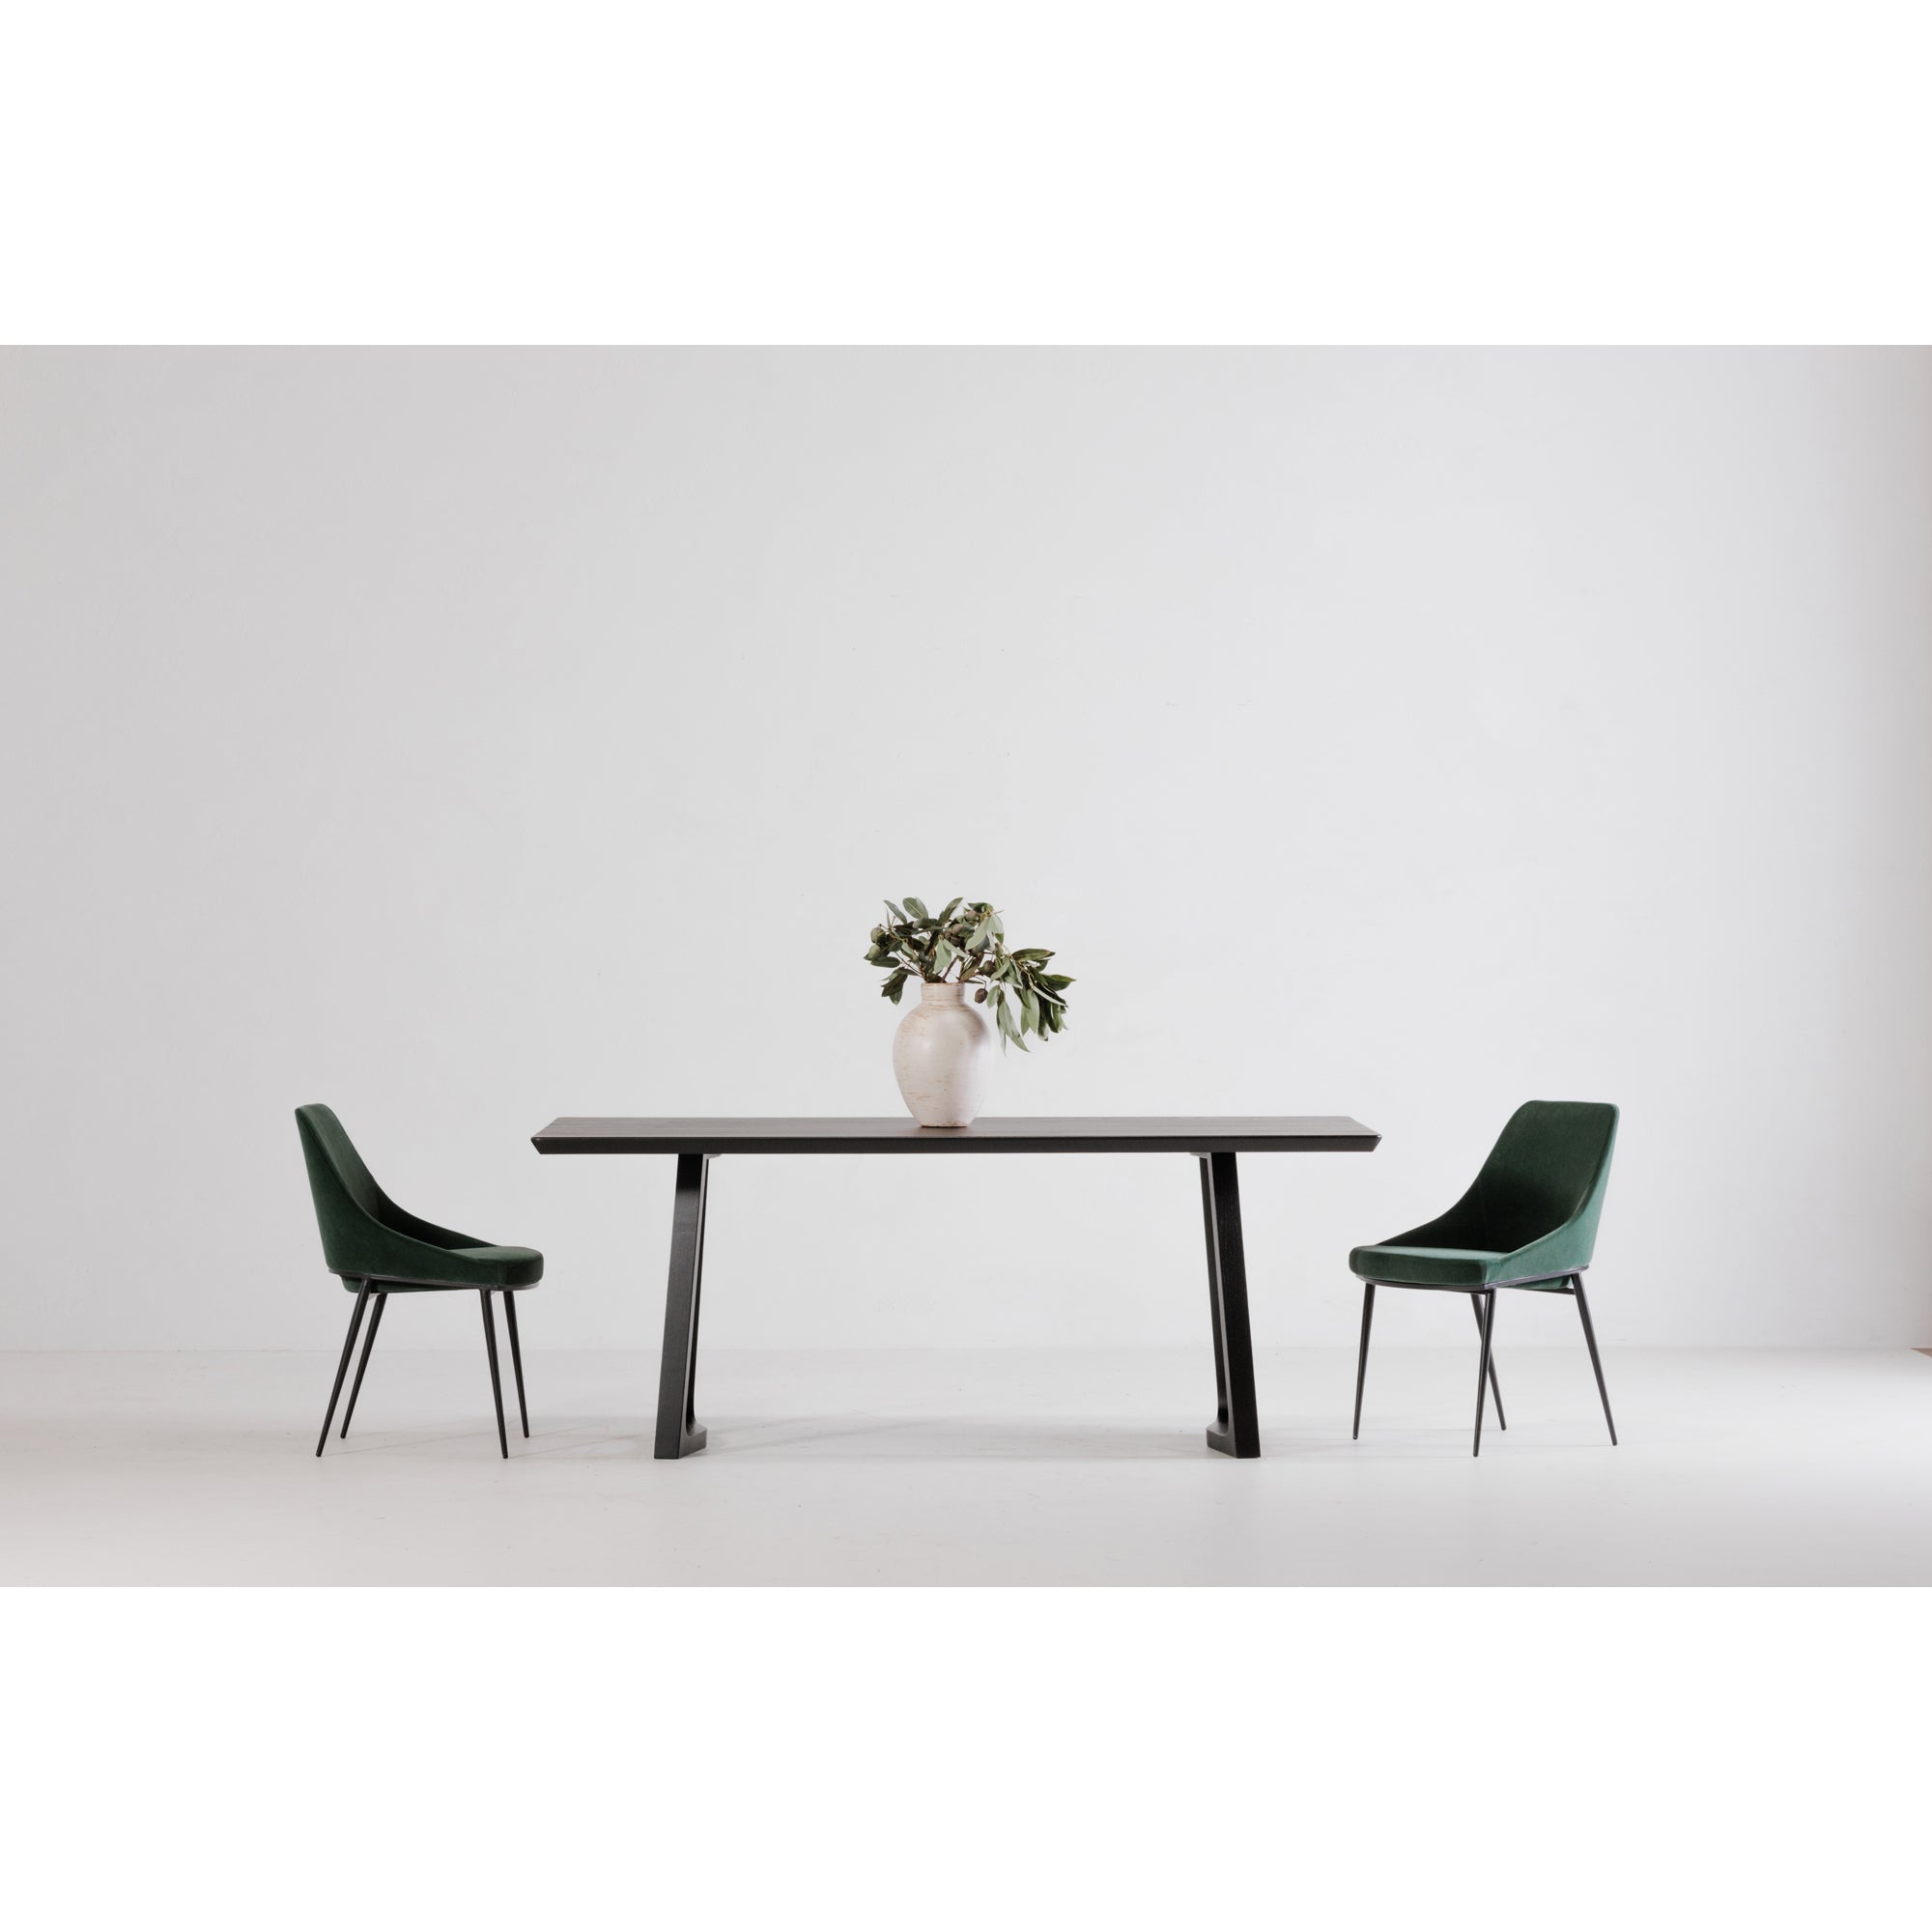 Sedona Dining Chair Green Velvet - Set Of Two